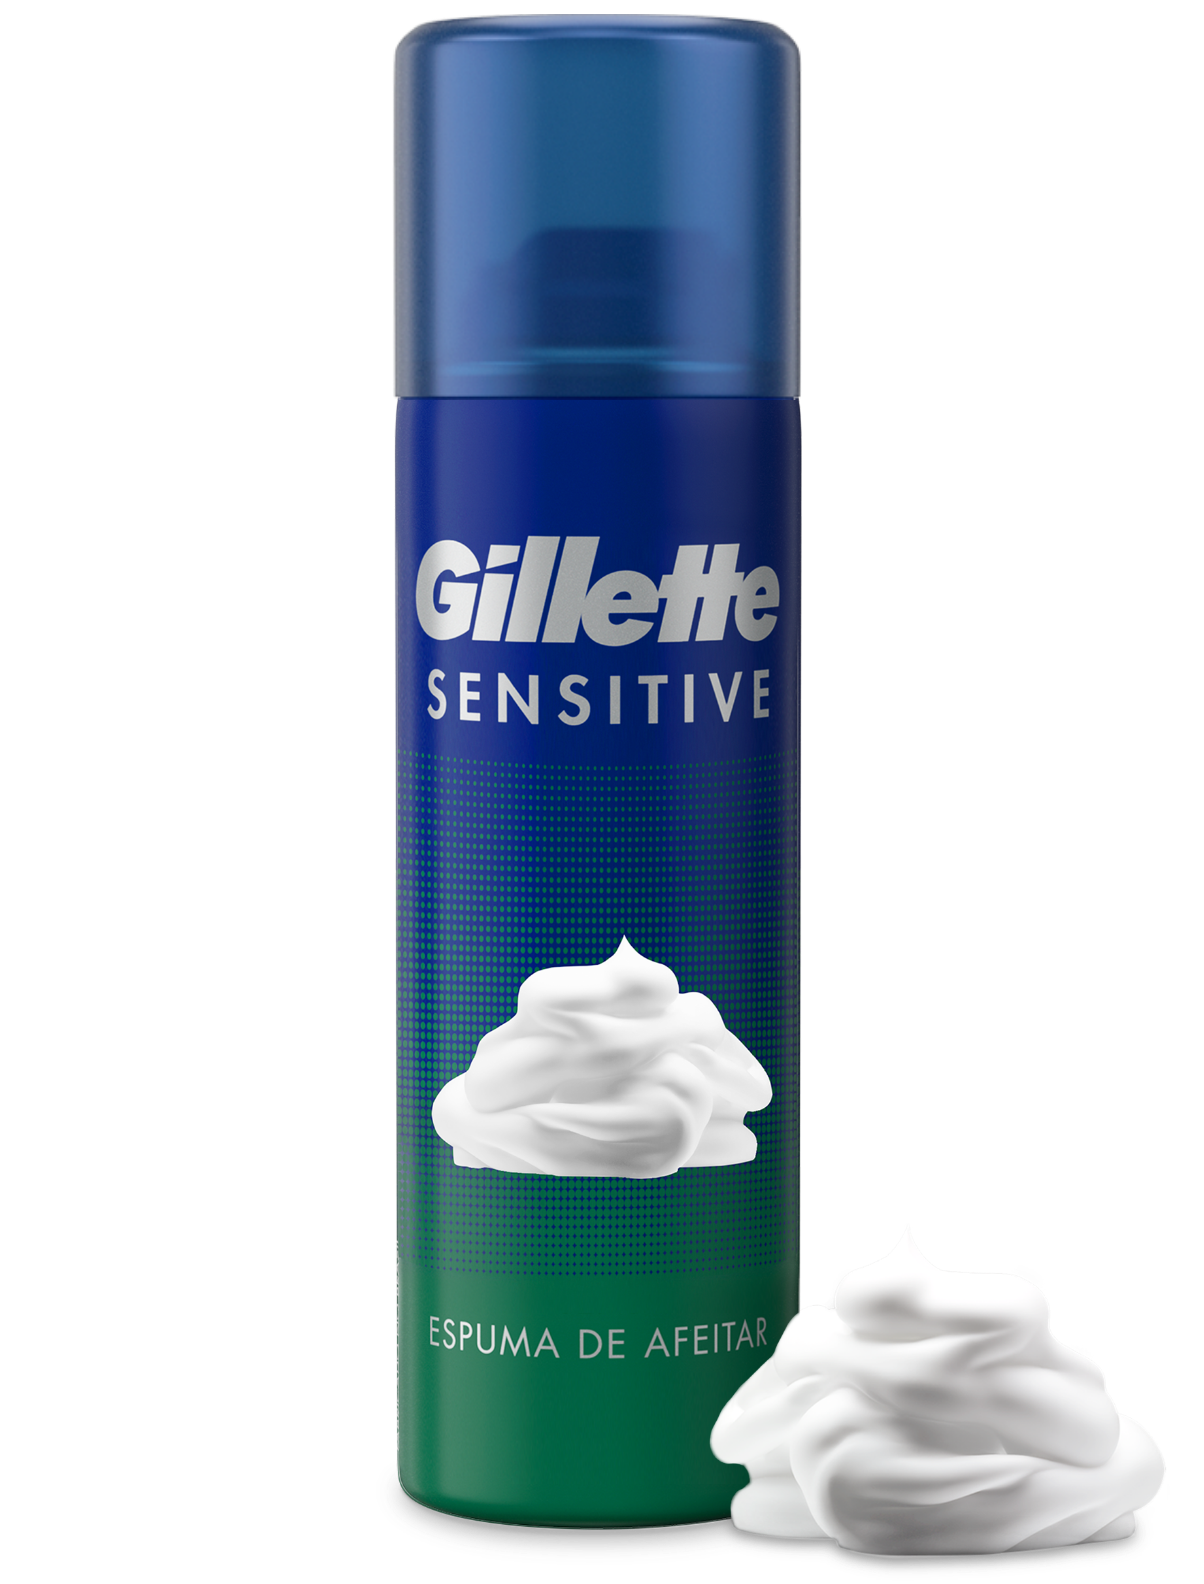 La espuma de afeitar Gillette Sensitive te proporciona hasta un 33 % más de lubricación